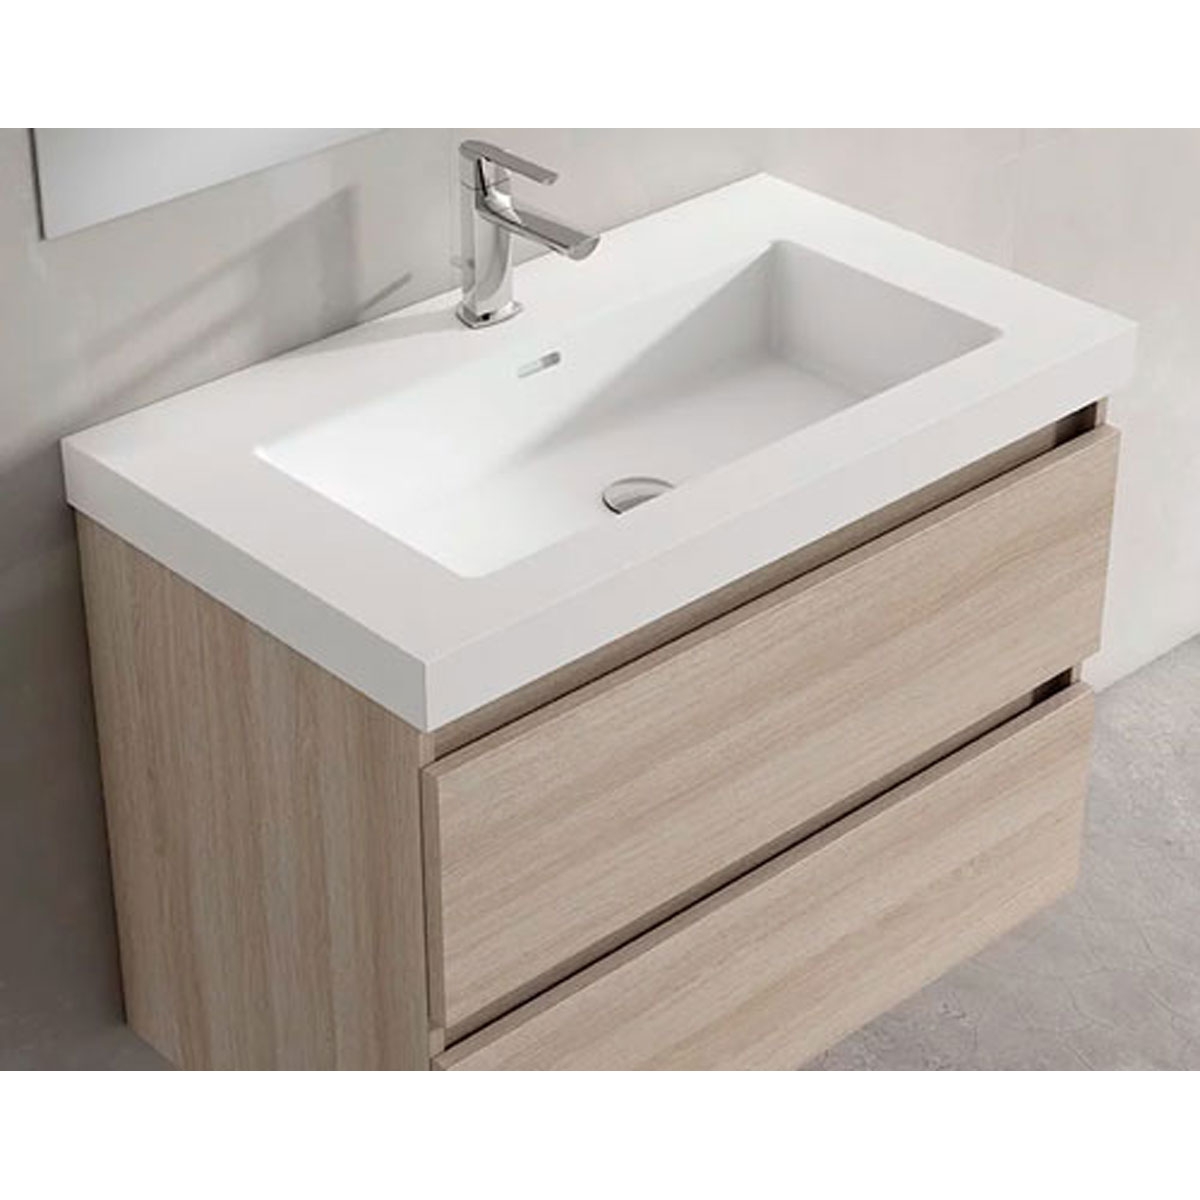 Mueble de baño suspendido de 120 cm con lavabo integrado acabado crudo Modelo Granada4